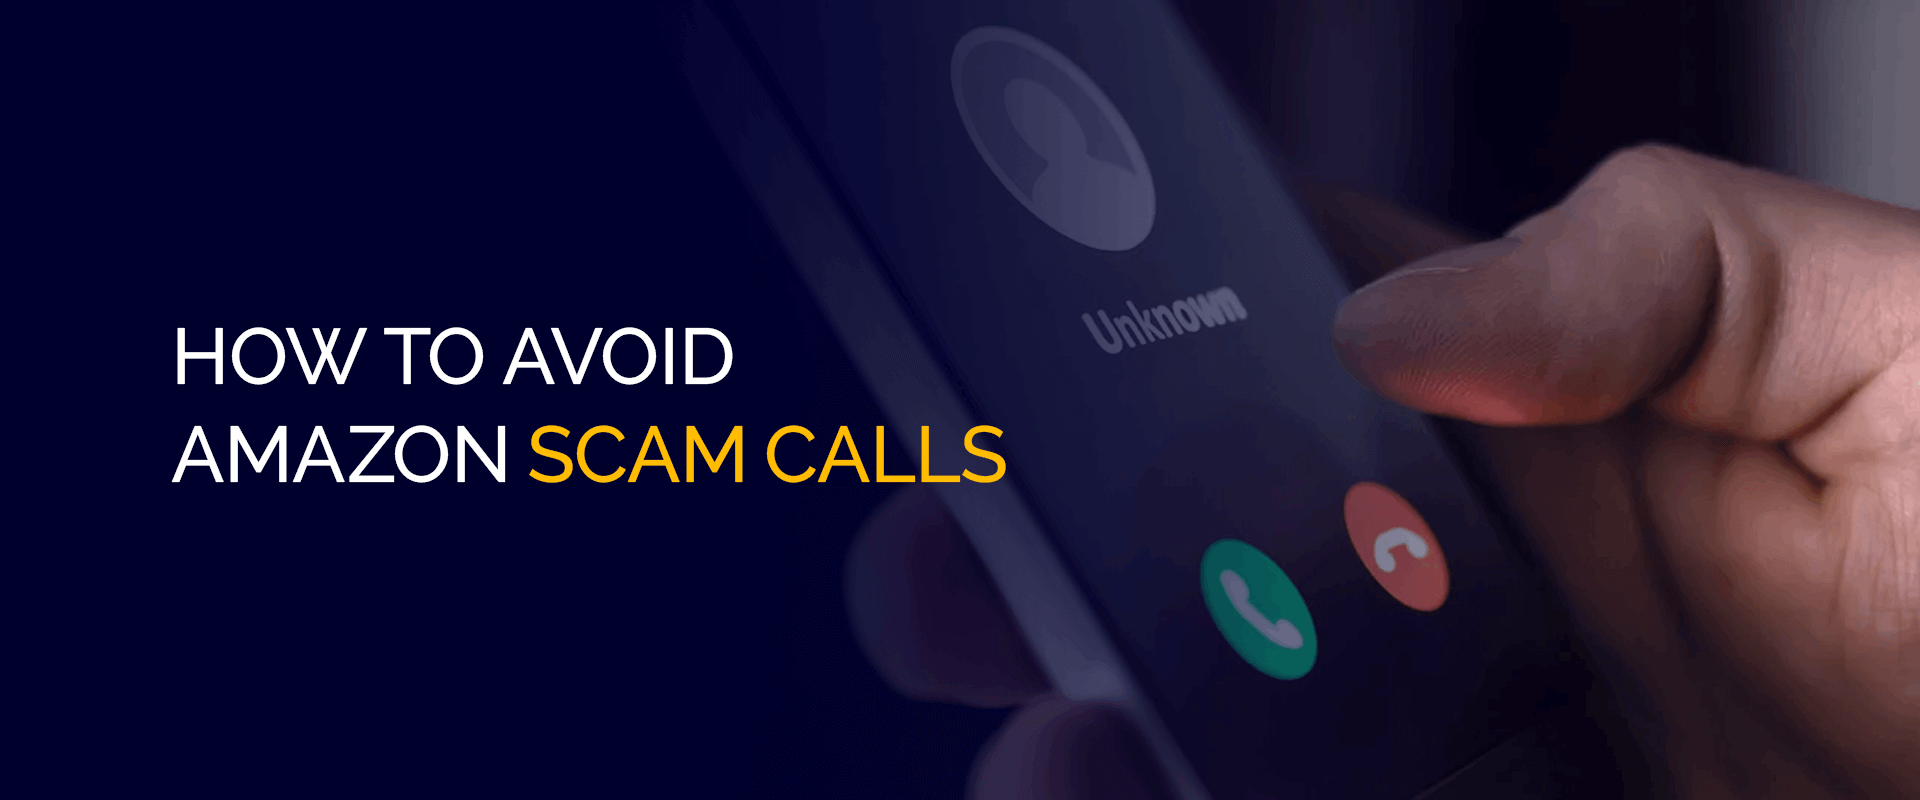 How to Avoid Amazon Scam Calls